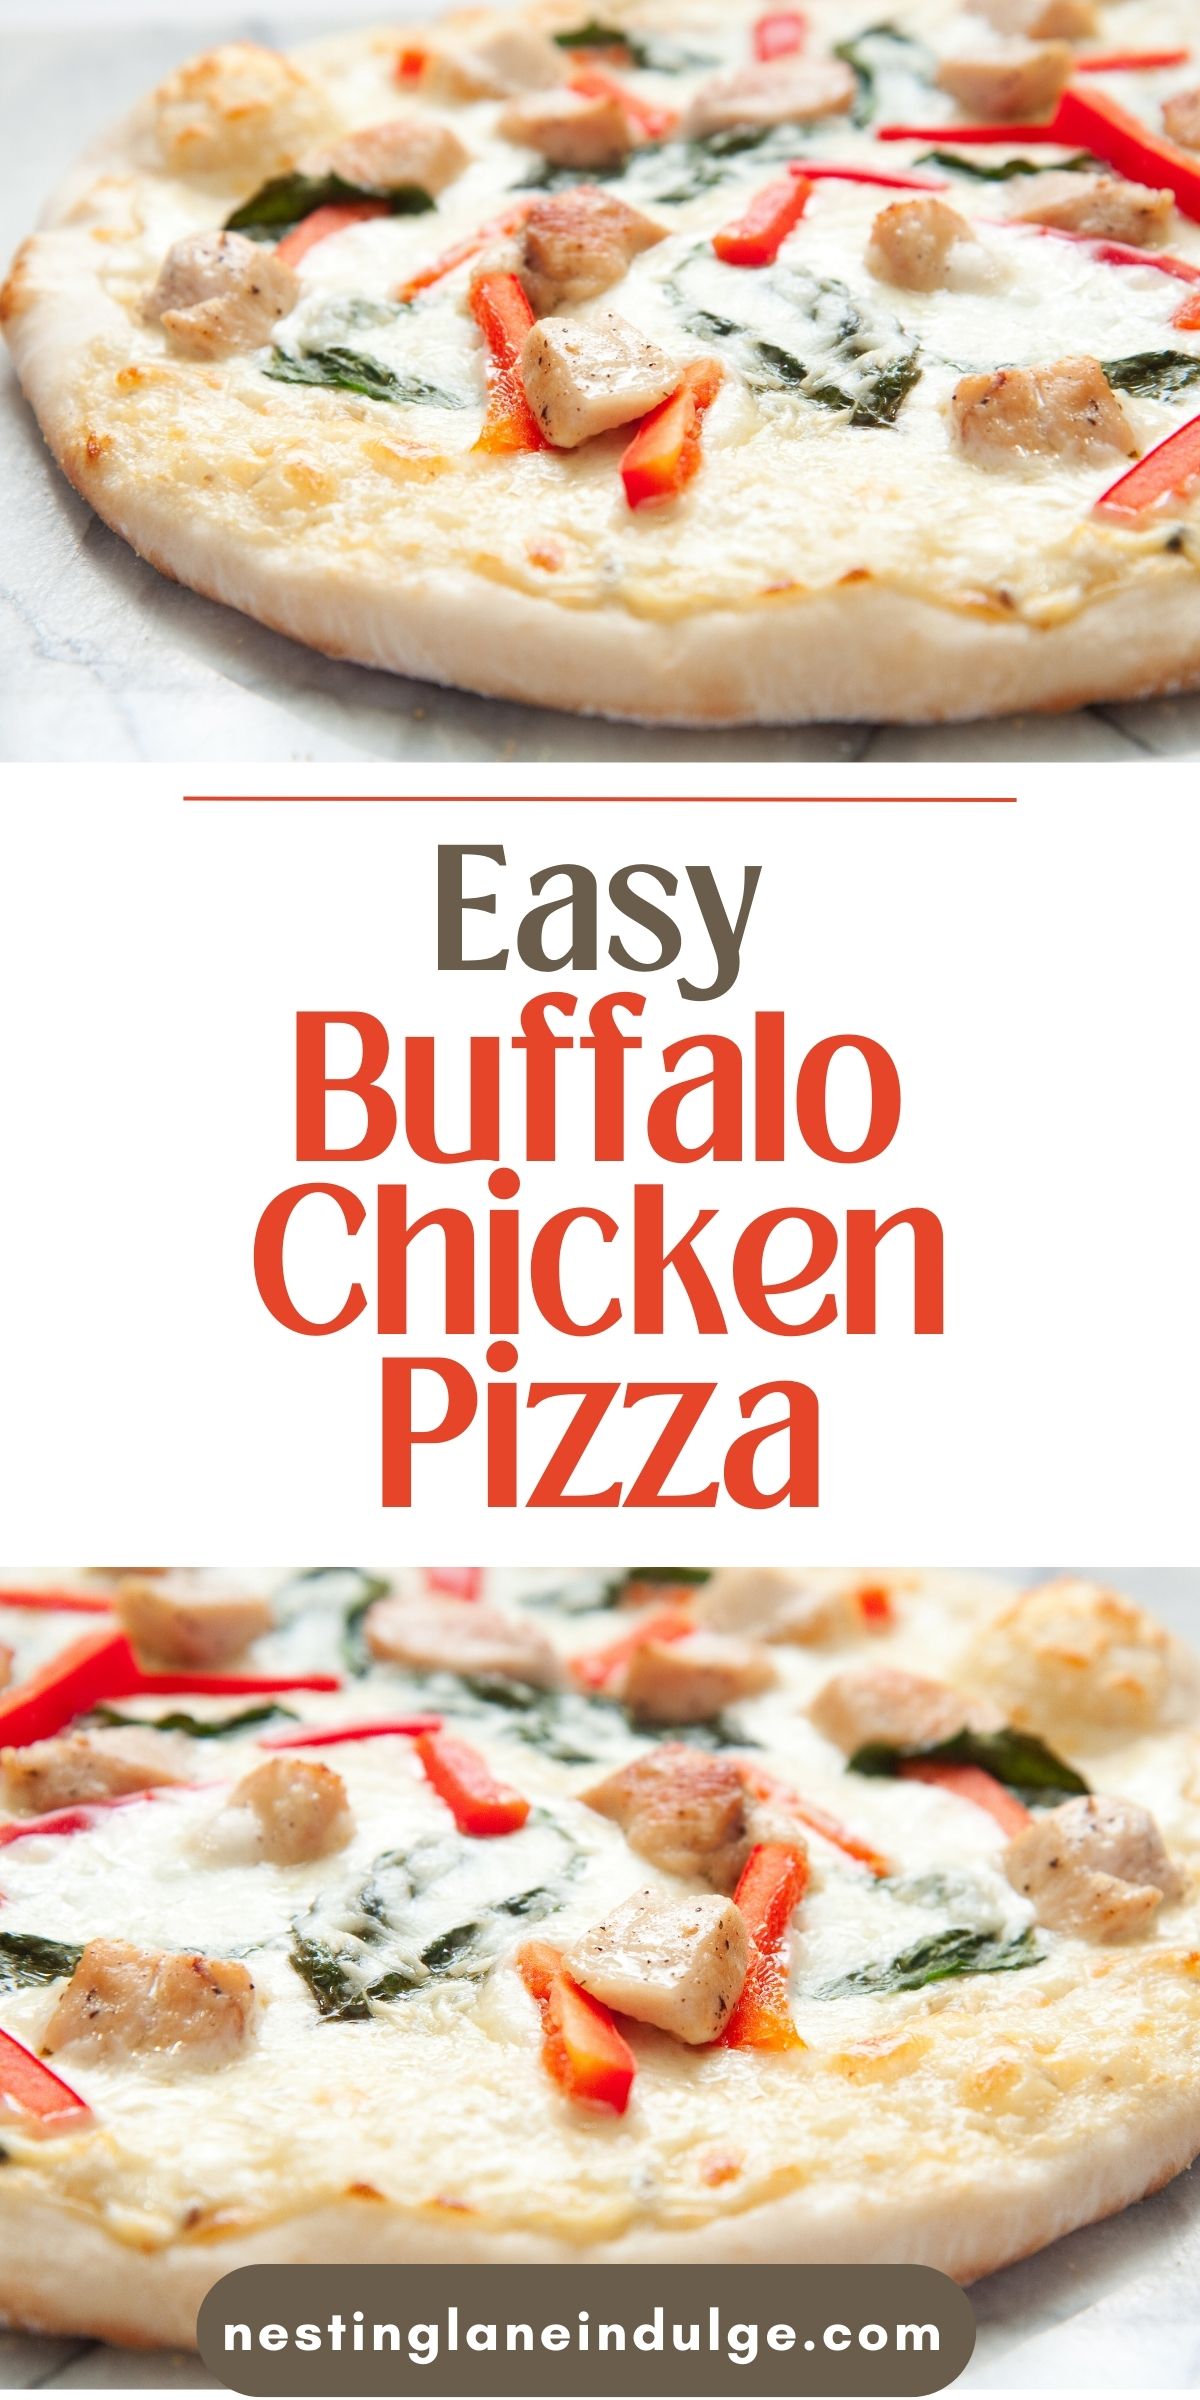 Buffalo Chicken Pizza Recipe graphic.